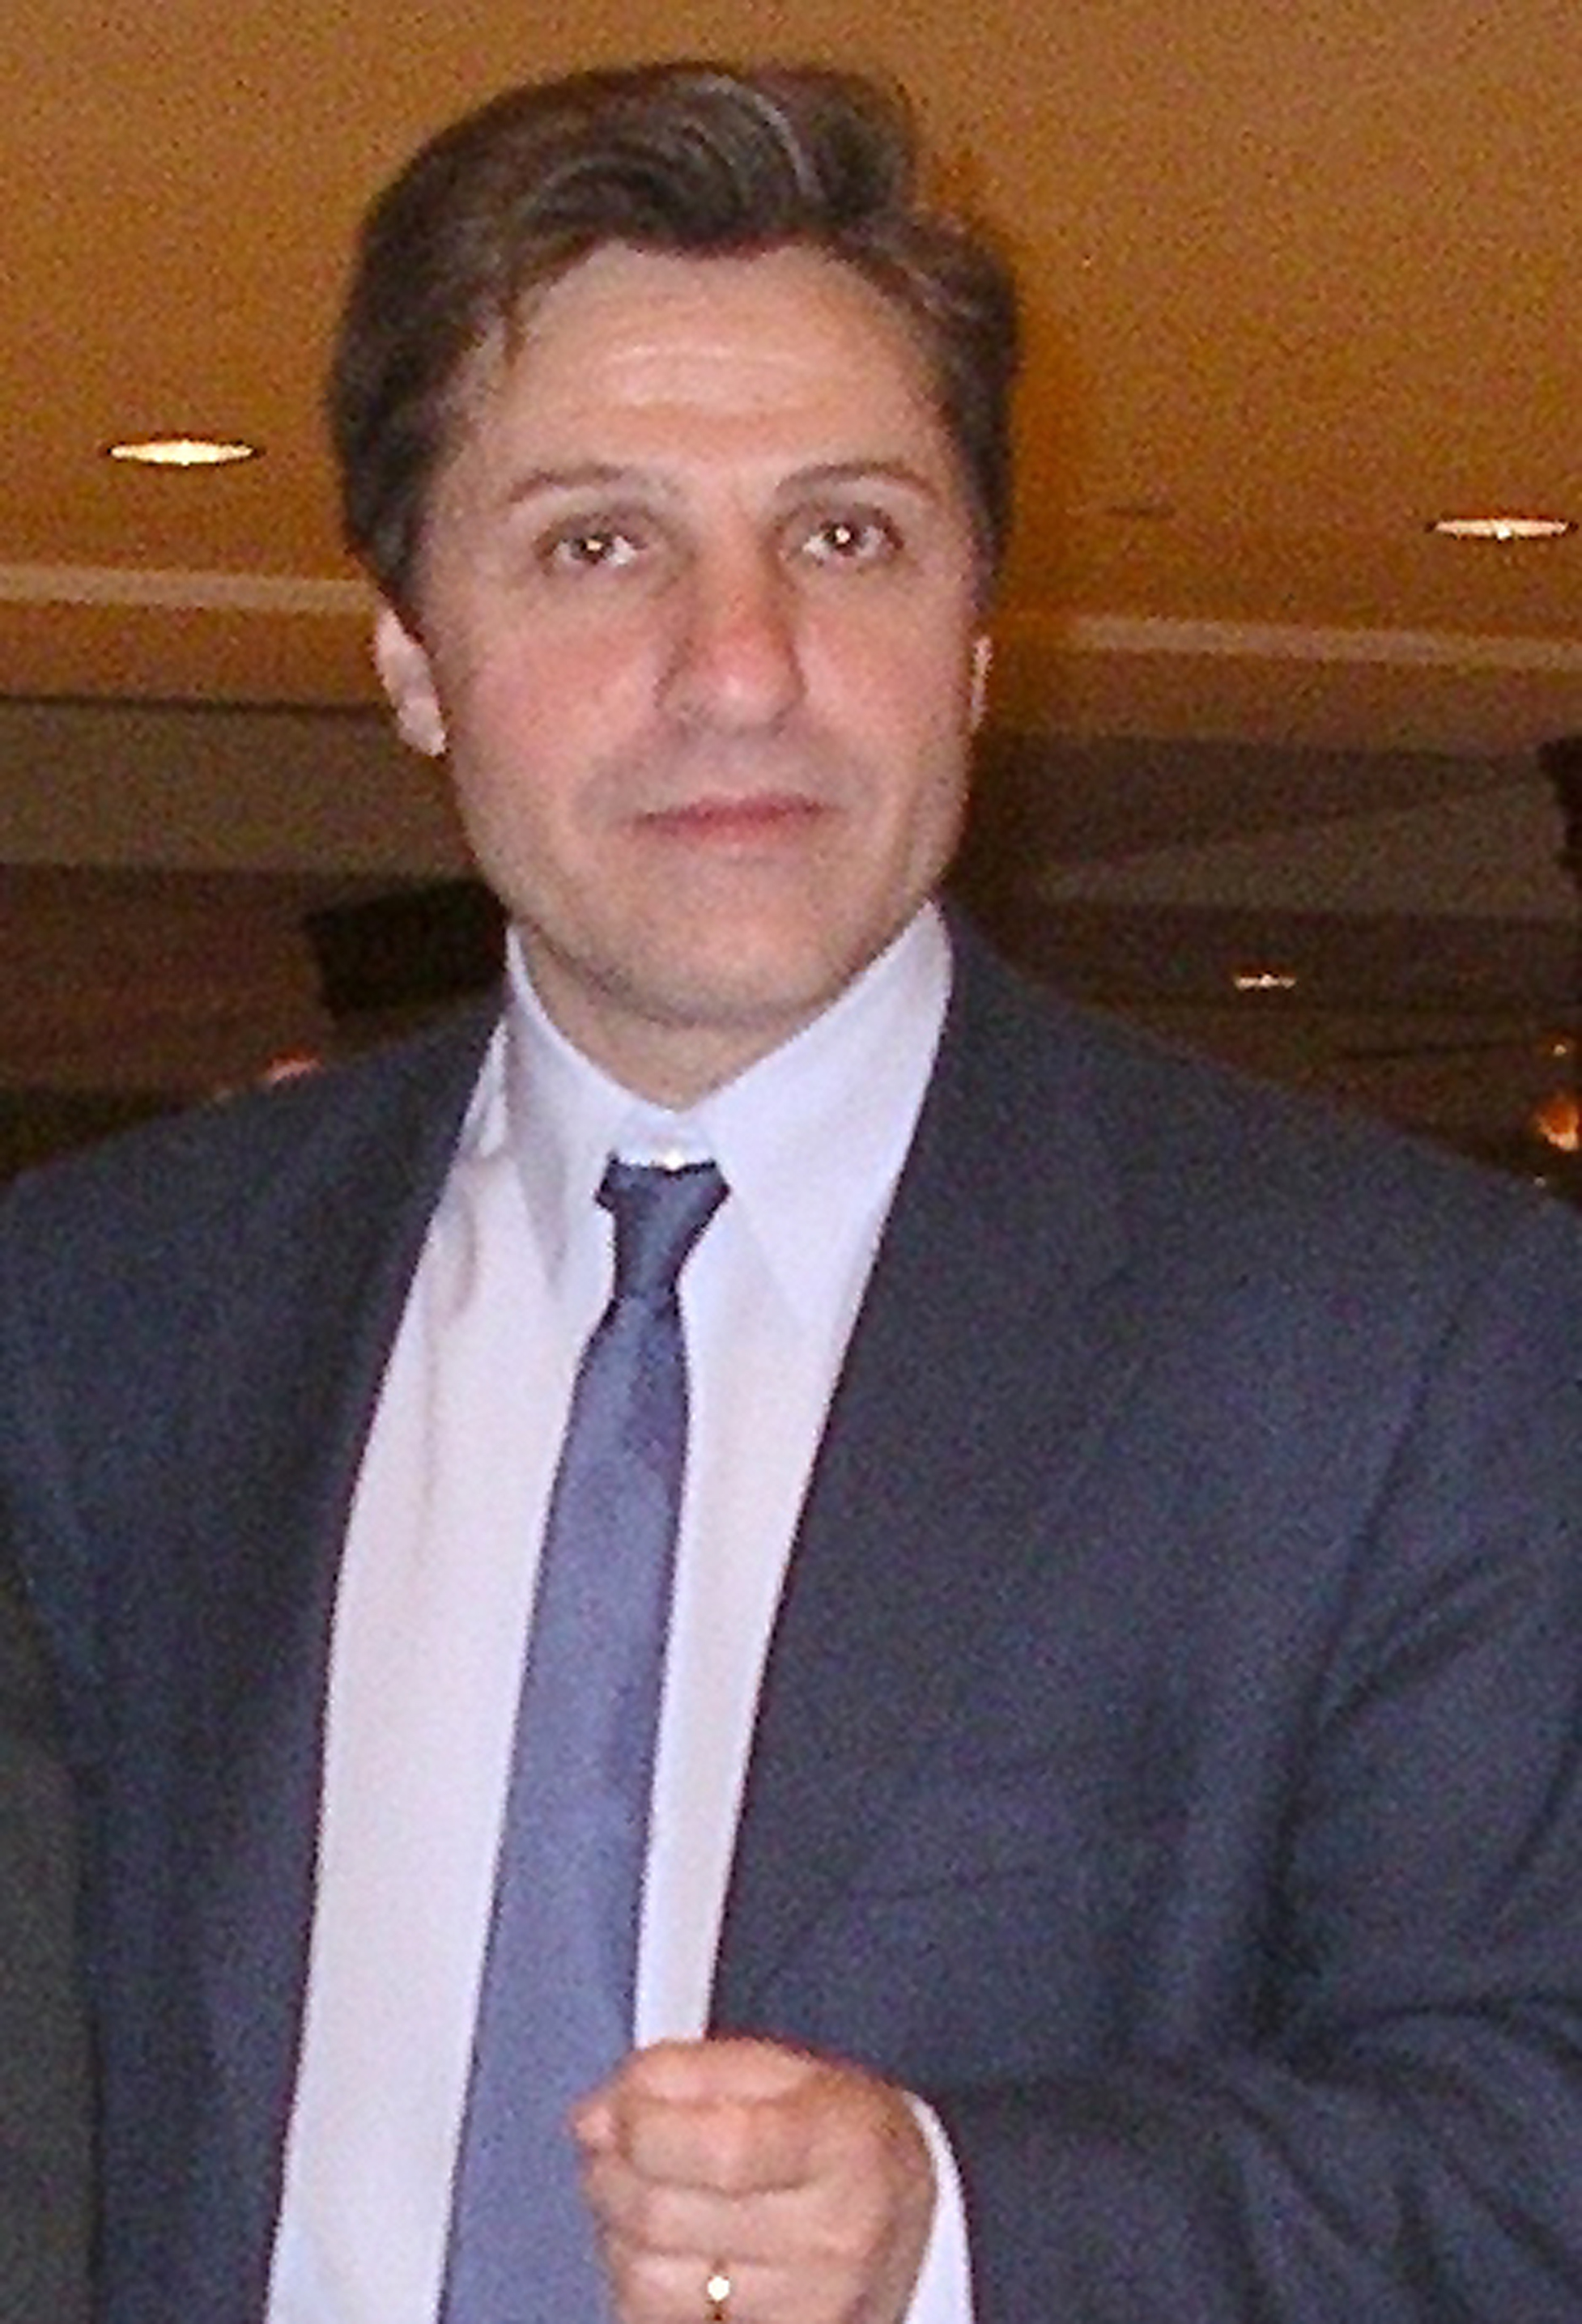 Ziad H. Hamzeh